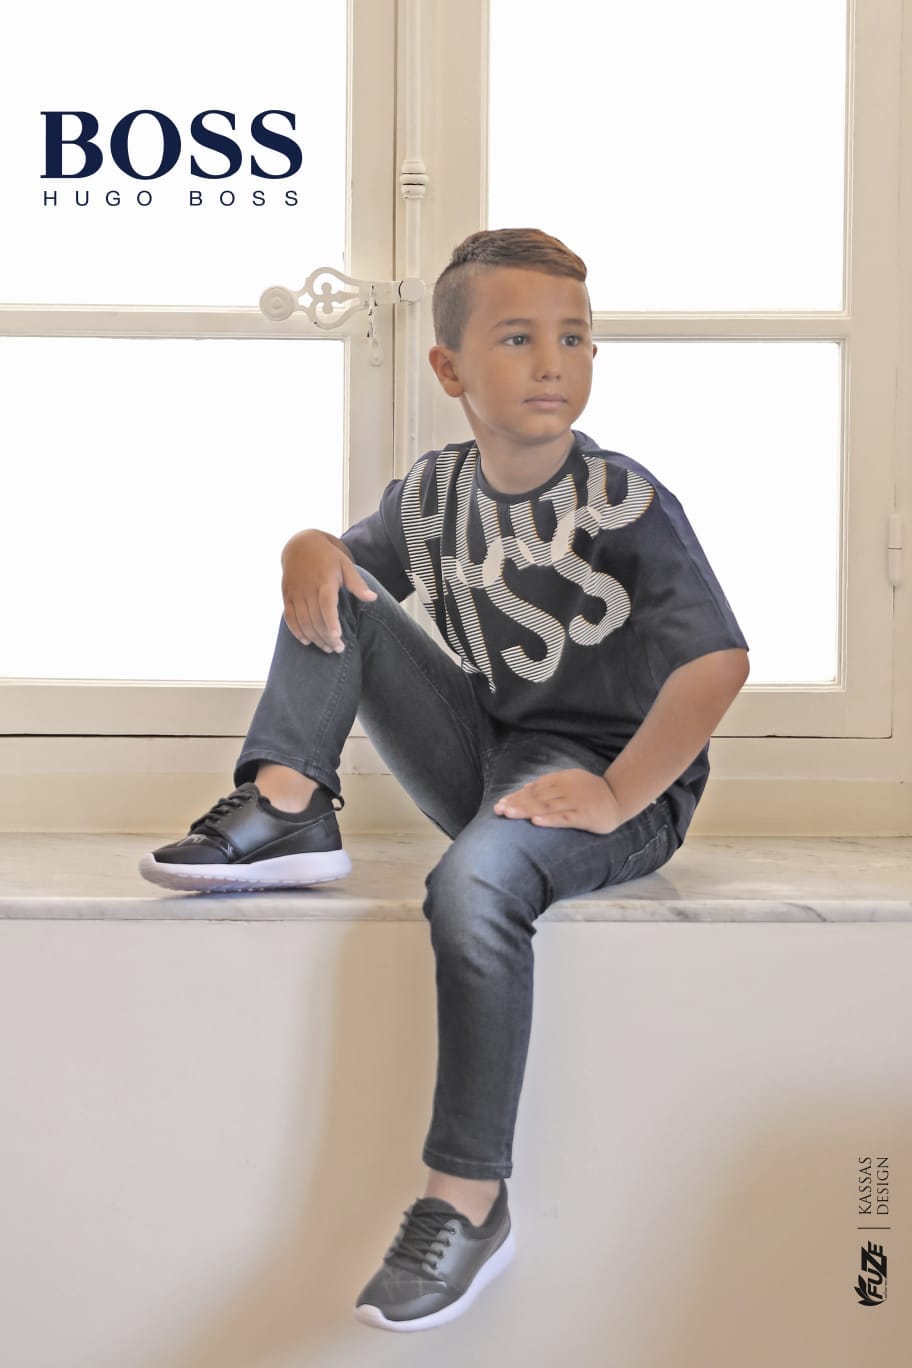  يافا: أرقى الماركات العالمية لملابس الأطفال في بيت هموتجيم KIDS